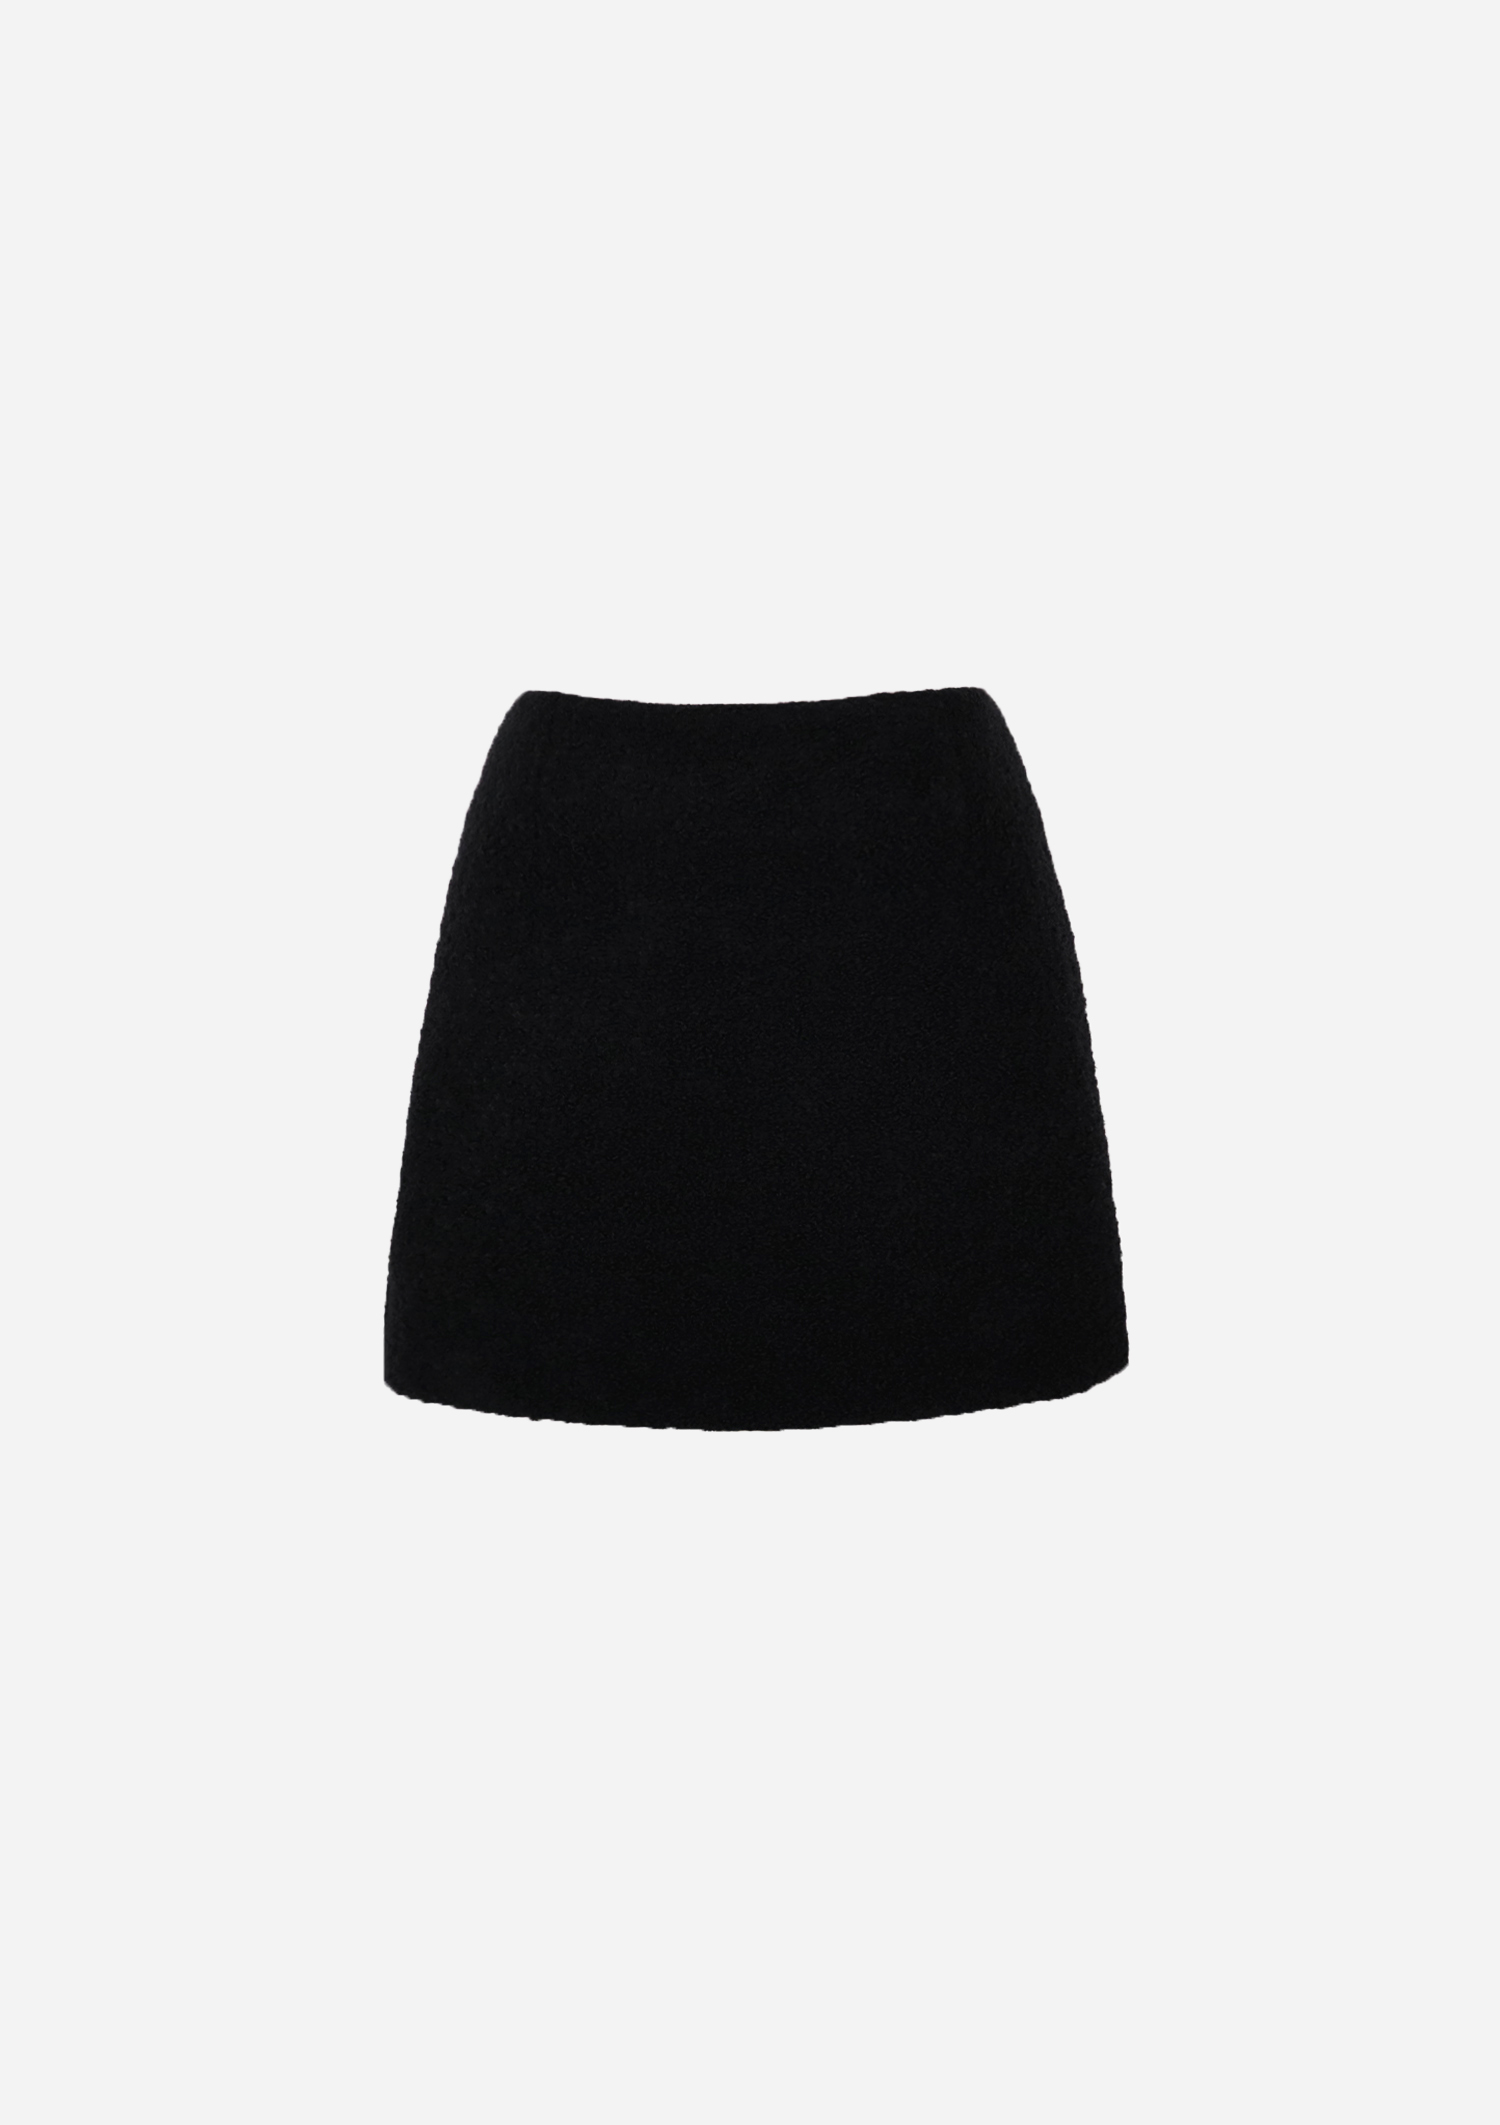 bouclé black mini skirt